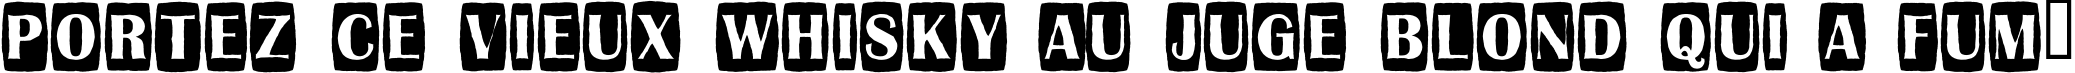 Пример написания шрифтом a_AlbionicTitulCmJgg текста на французском